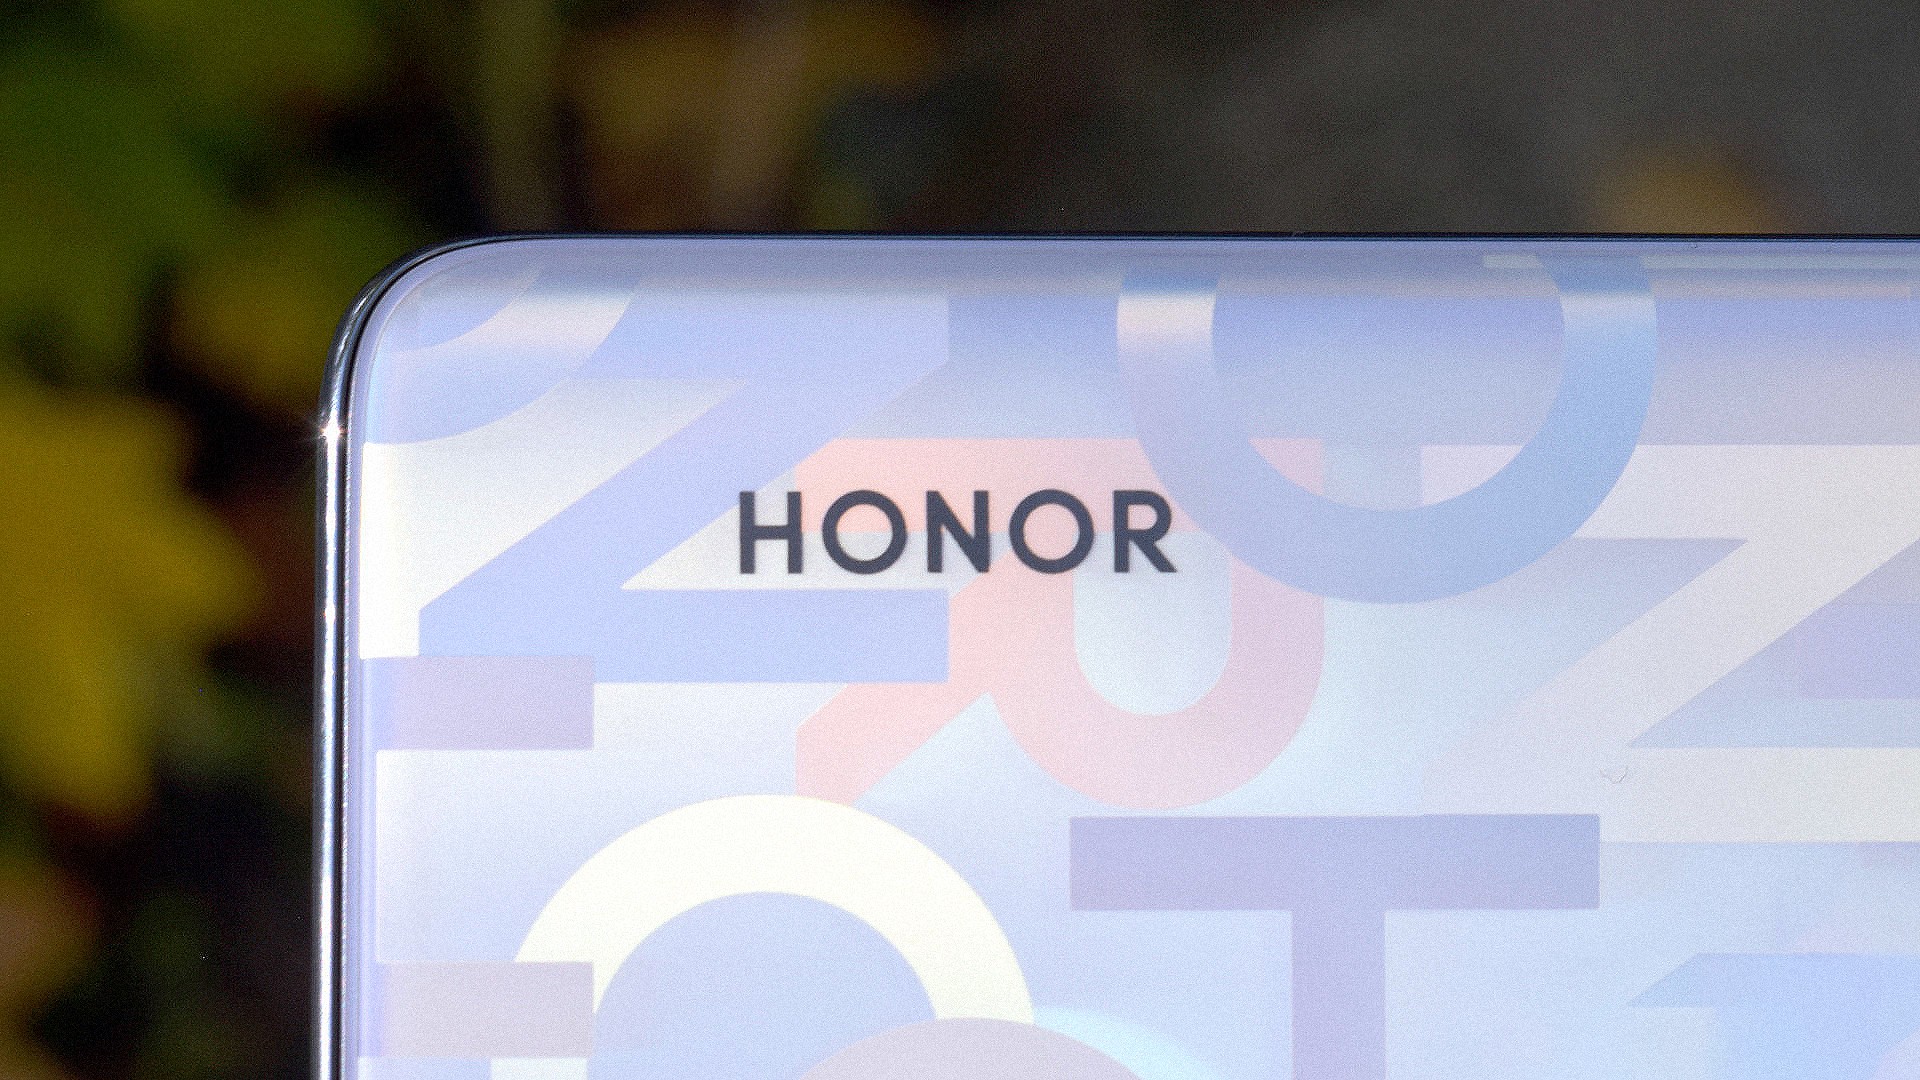 Honor X30: vazamento de imagens revelam design e opes de cores aps publicao de teasers